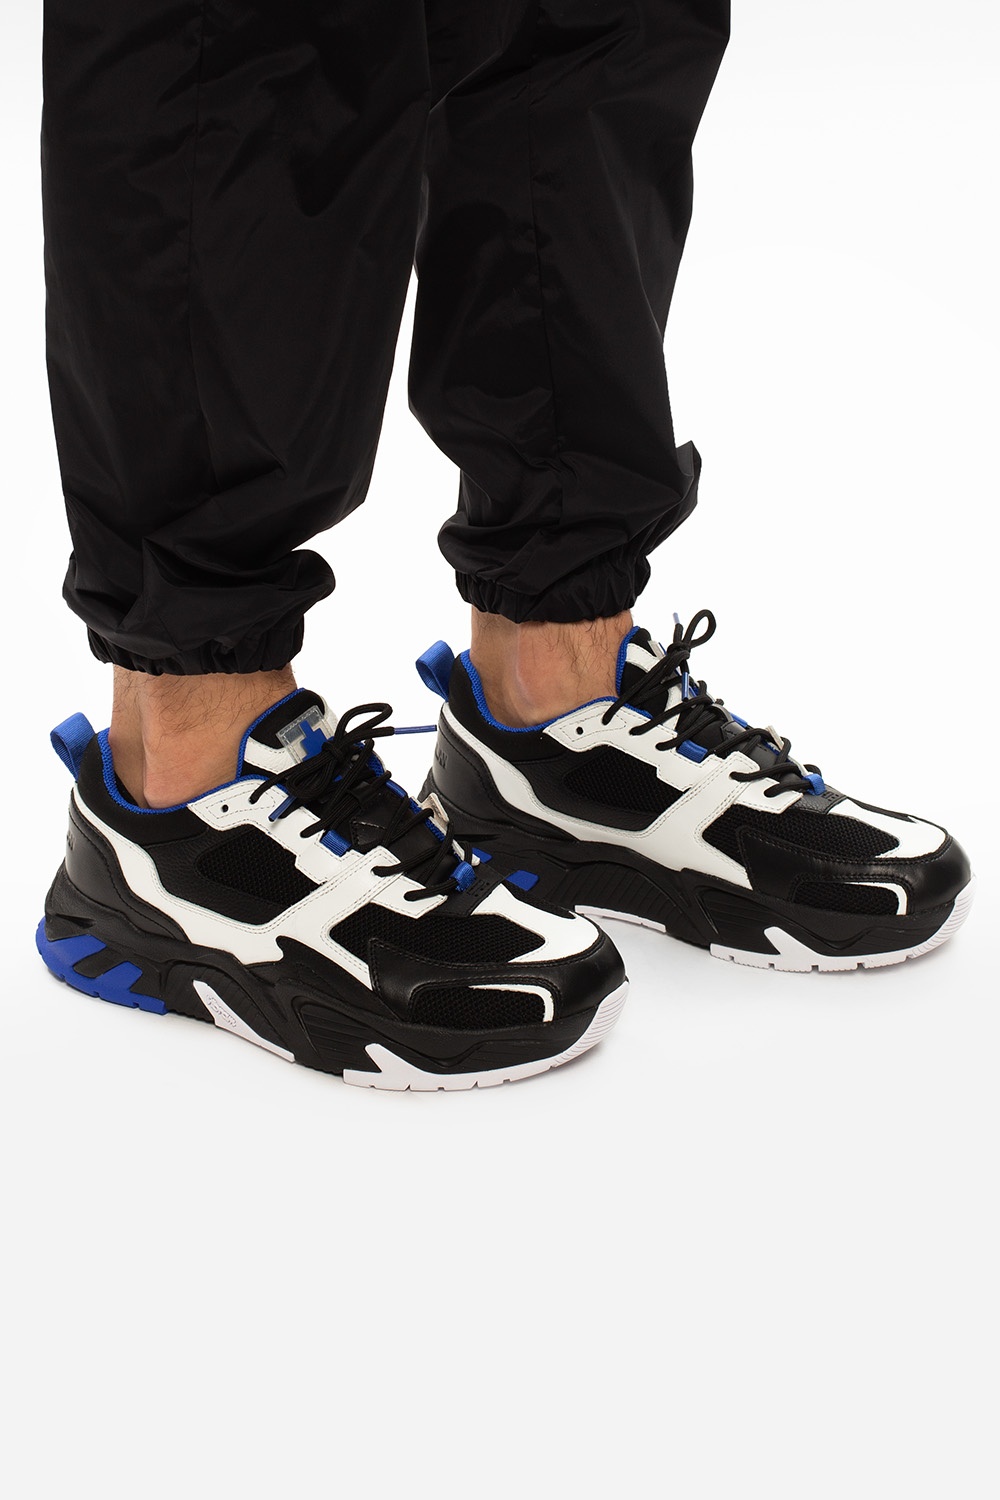 IetpShops - Men's Shoes Espn | Run 3000' sneakers Marcelo Burlon 'C - Cable Knit Faux Fur Lined Slipper Boots